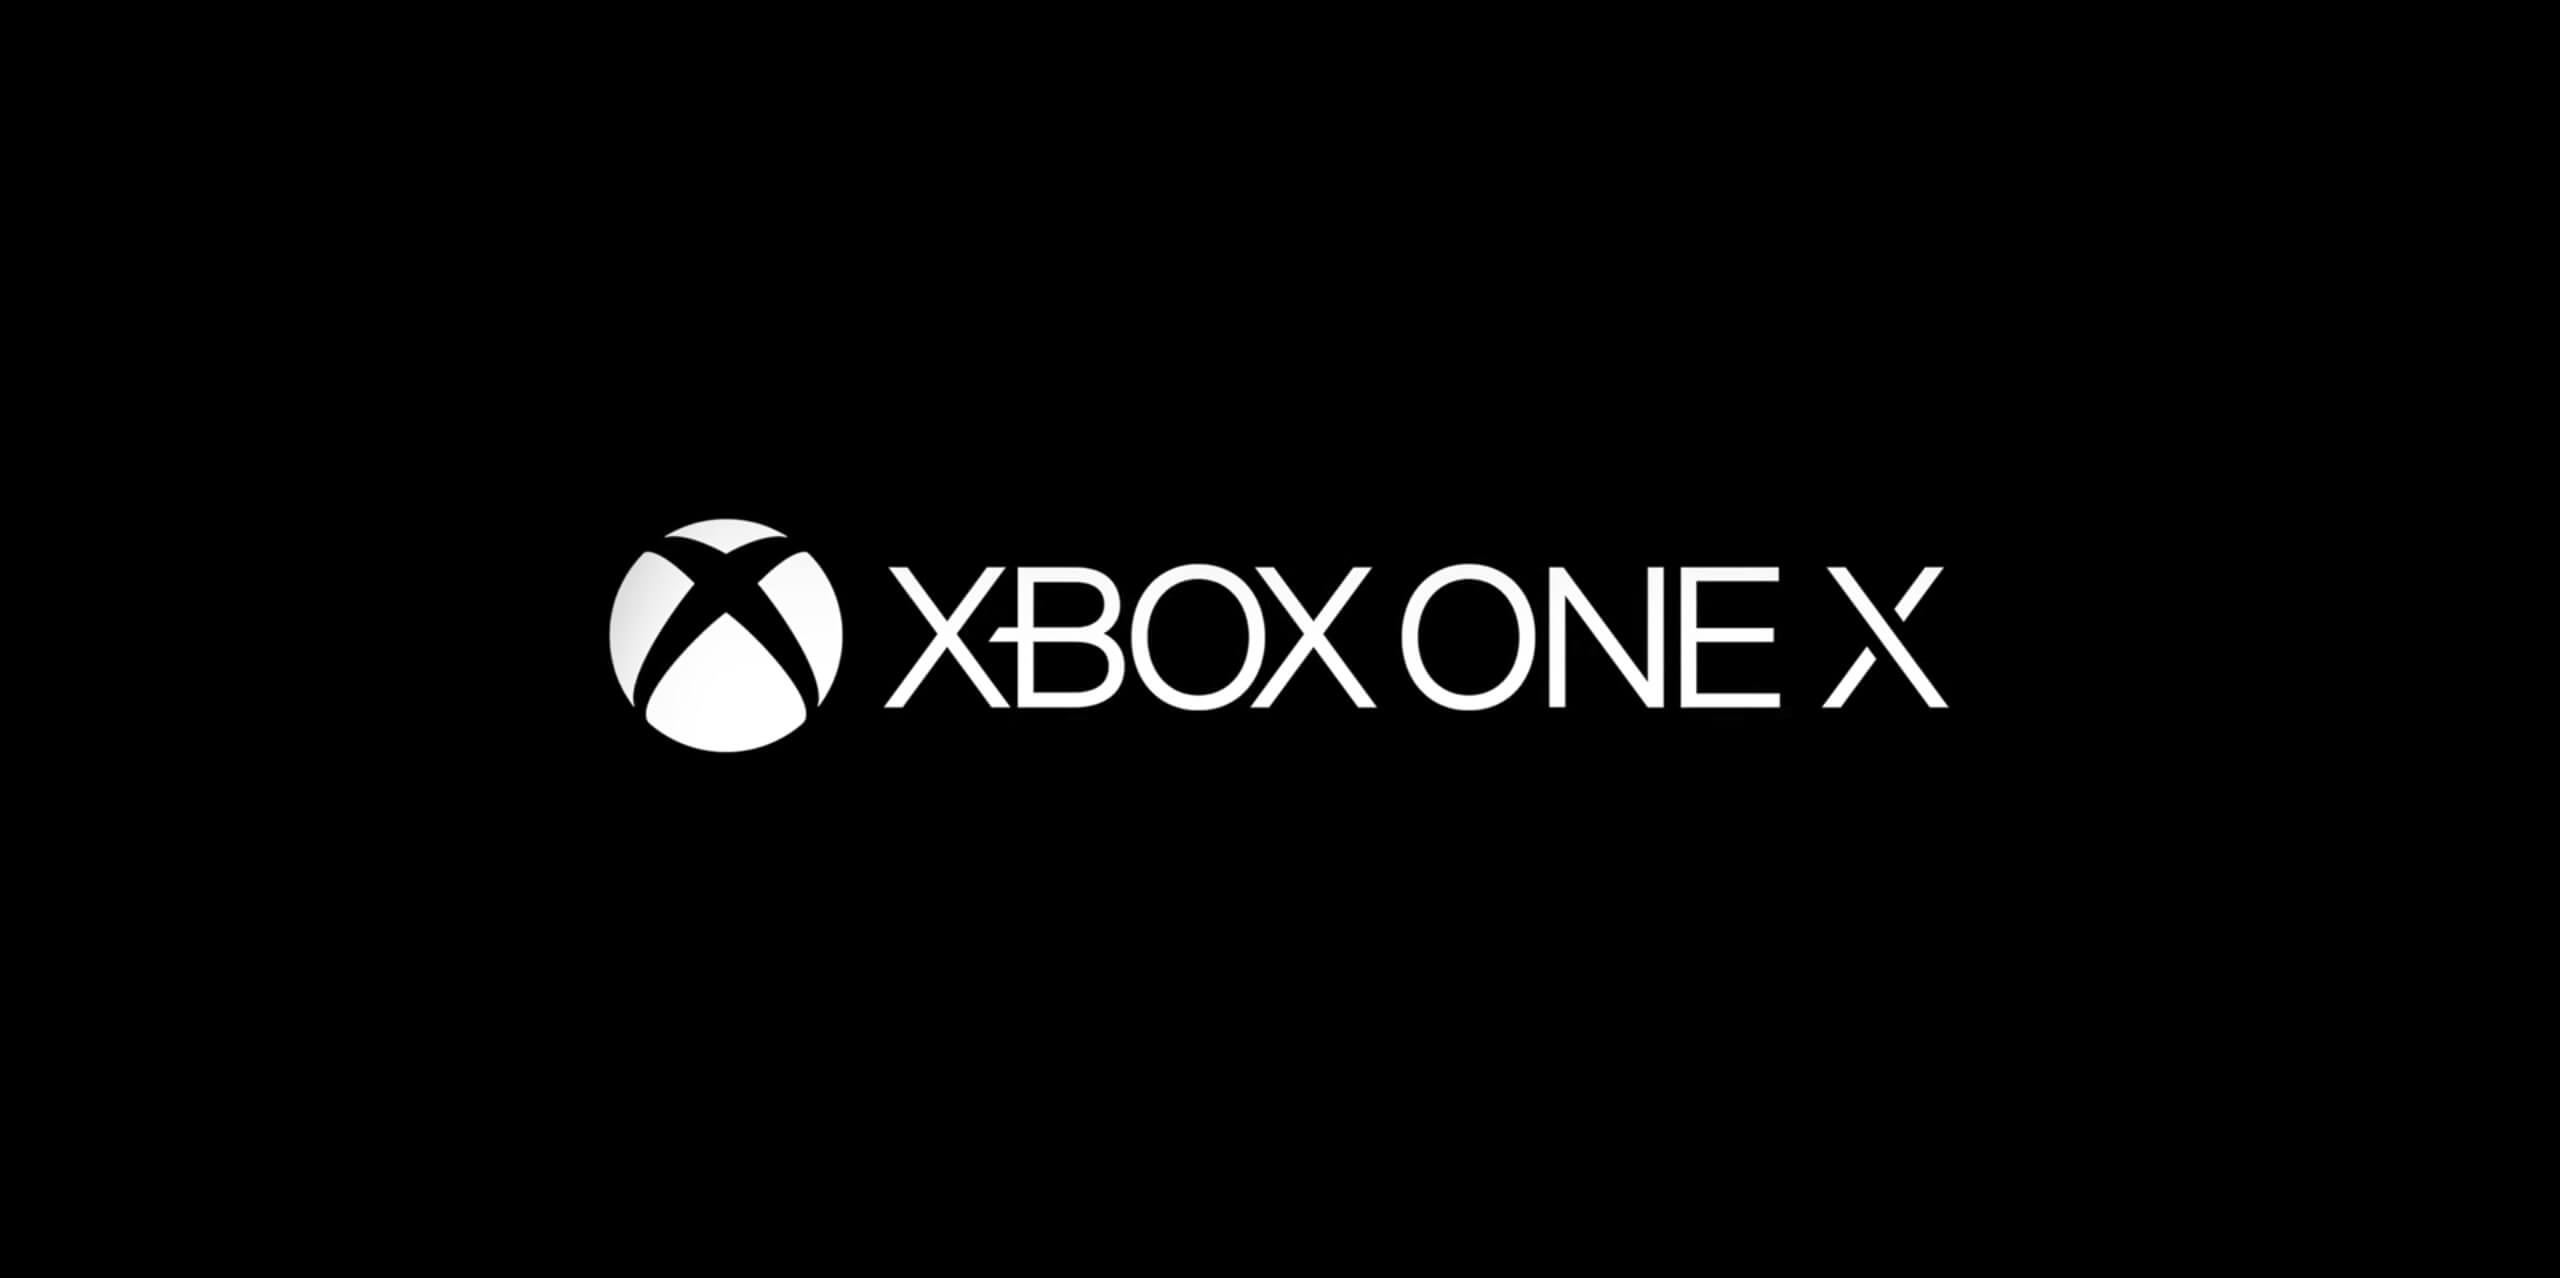 Xbox One Xの本体かっこいいな 久しぶりにゲーム機の見た目で惚れたわ Game Is Best ゲームイズベスト ゲーム エンタメ情報ブログ